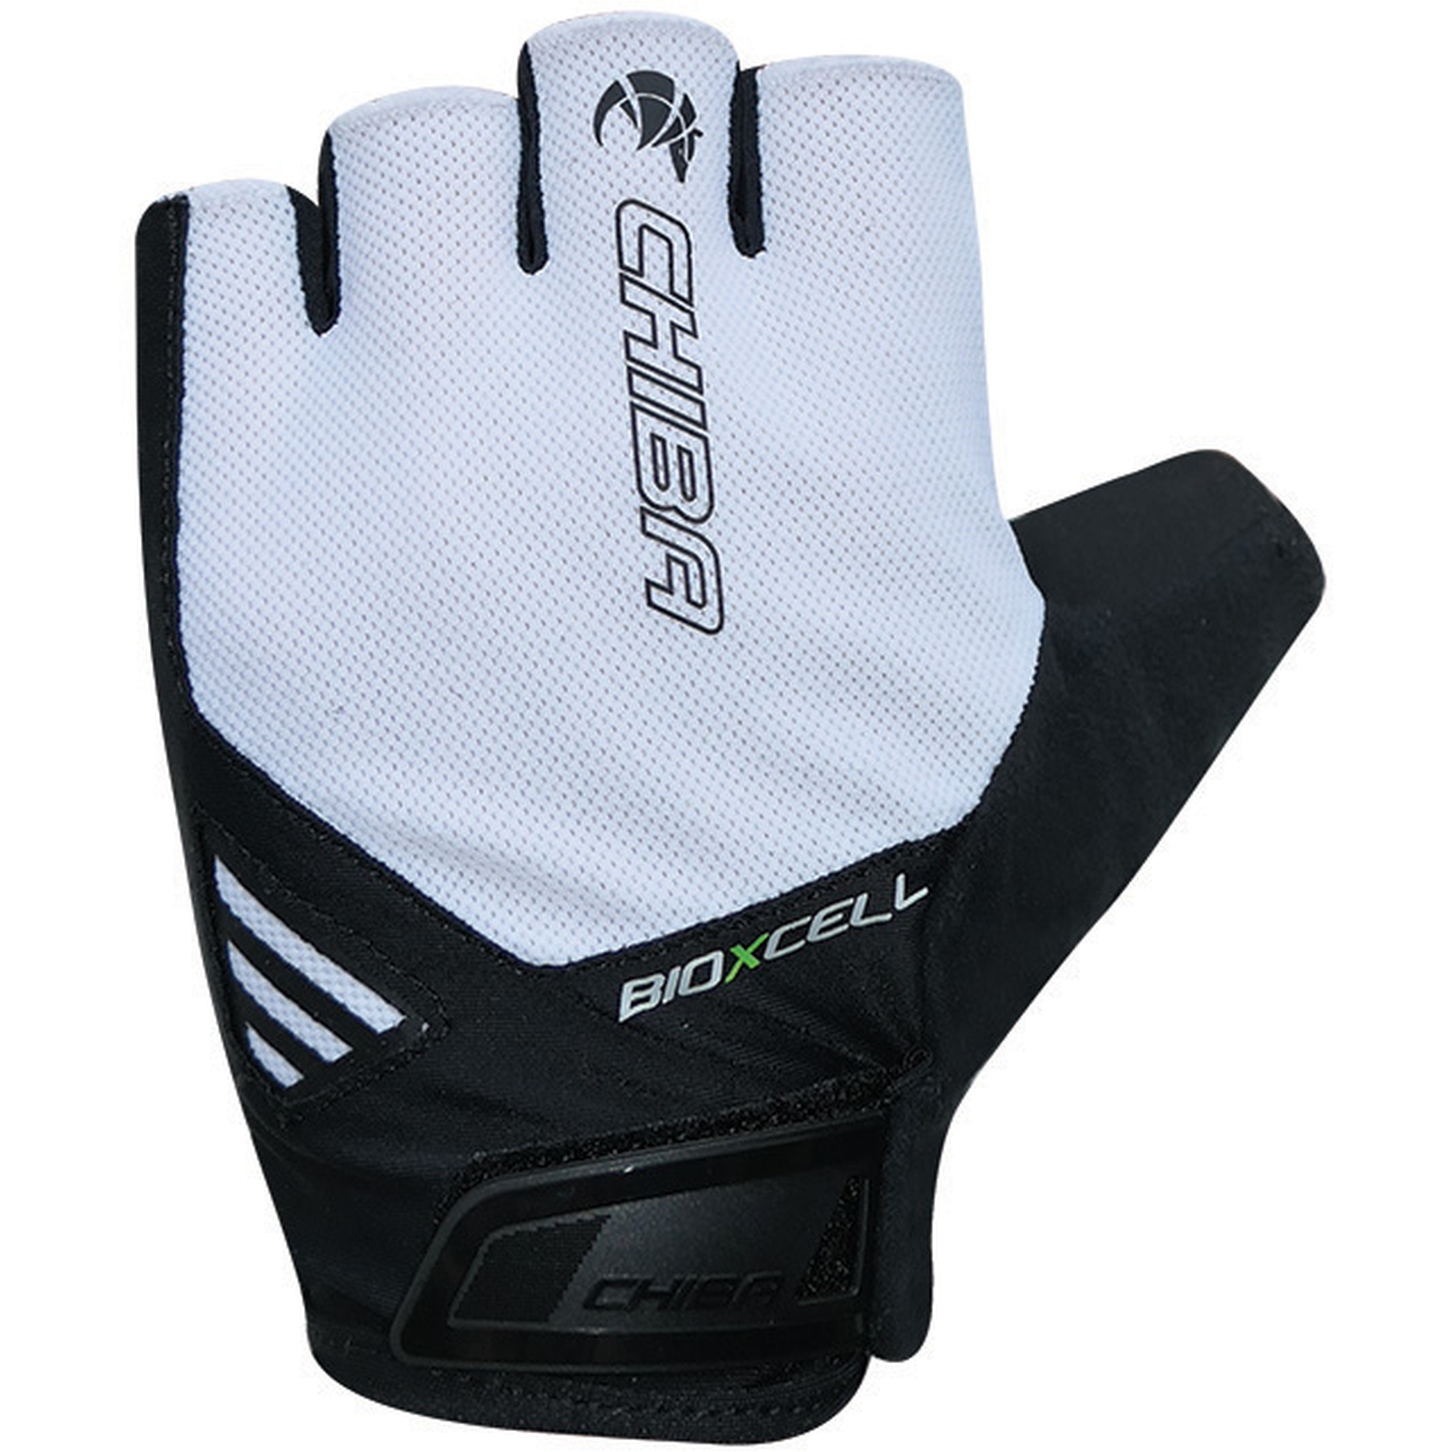 Productfoto van Chiba BioXCell Air Handschoenen met Korte Vingers - wit